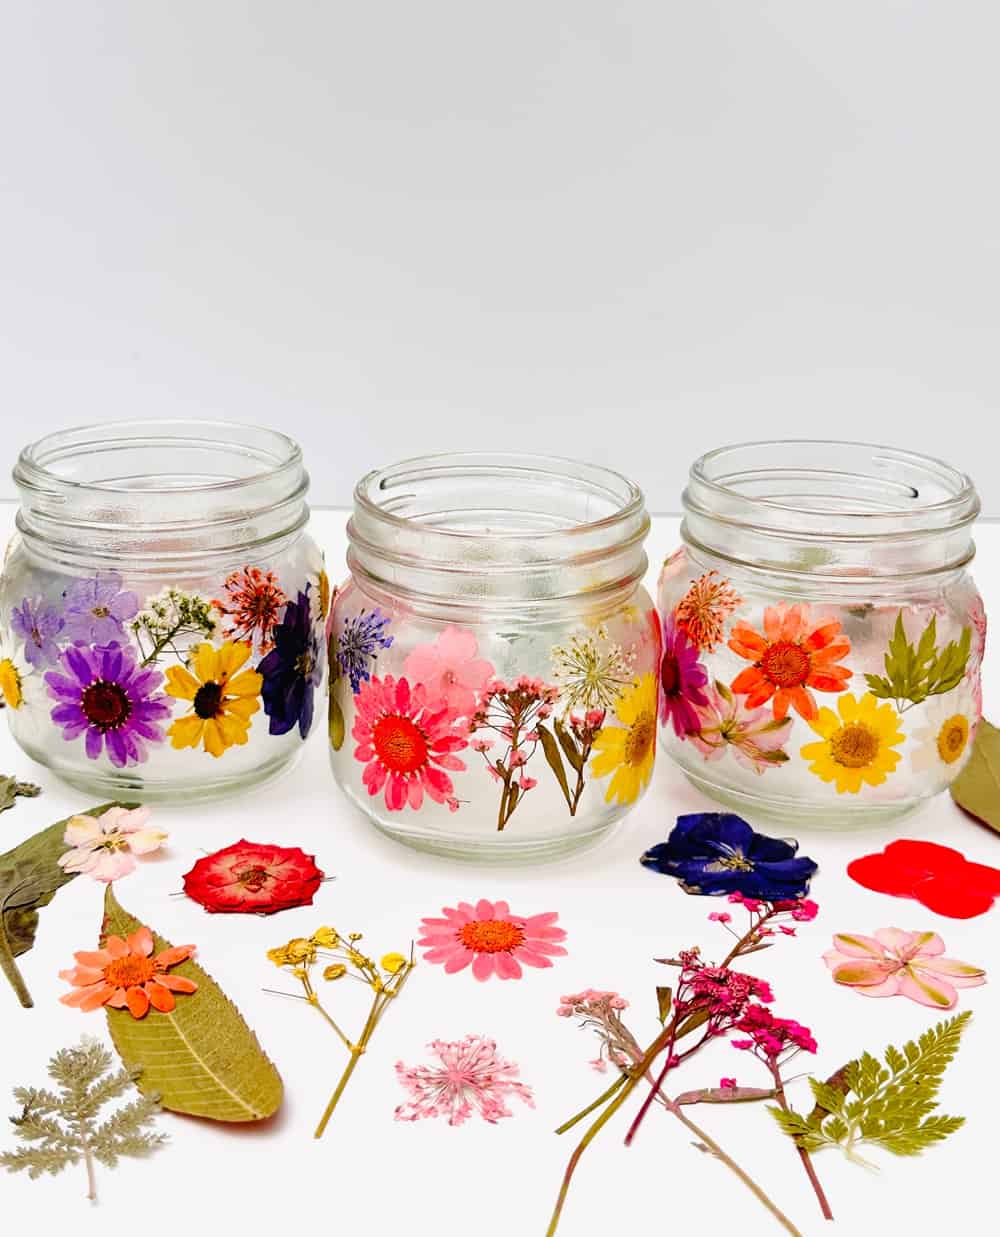 diy pressed flower jars